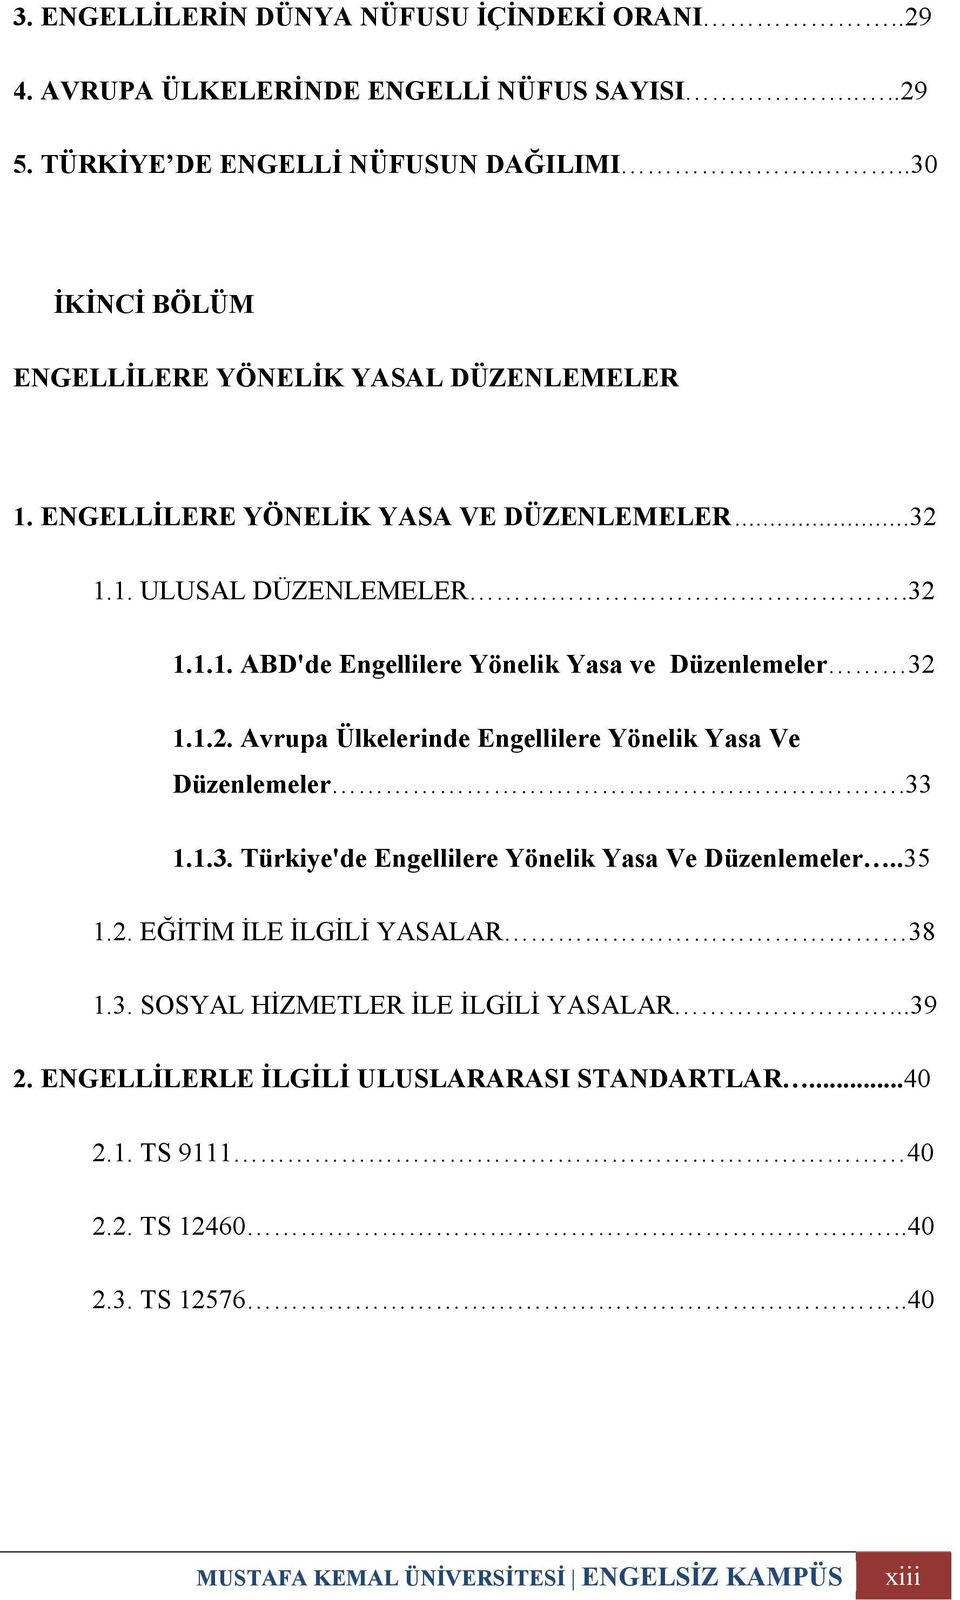 1.2. Avrupa Ülkelerinde Engellilere Yönelik Yasa Ve Düzenlemeler.33 1.1.3. Türkiye'de Engellilere Yönelik Yasa Ve Düzenlemeler..35 1.2. EĞİTİM İLE İLGİLİ YASALAR 38 1.